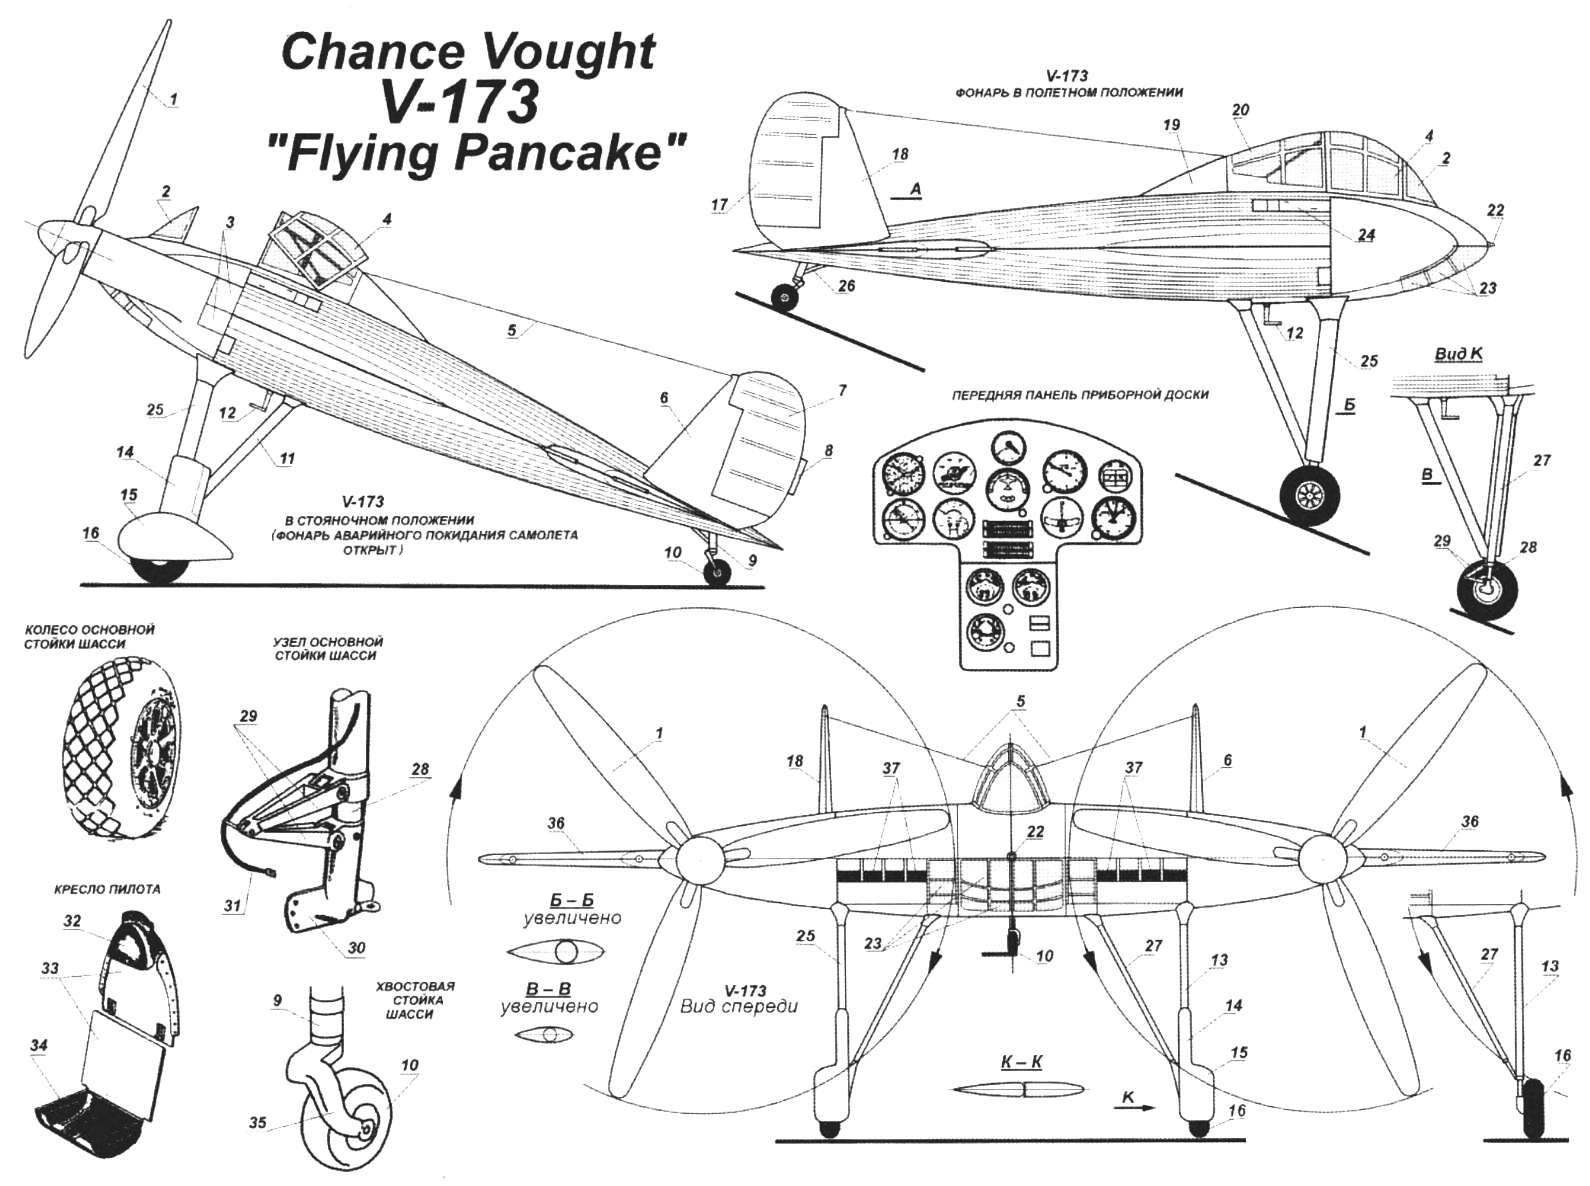 Экспериментальный самолет V-173 конструкции Ч. Циммермана